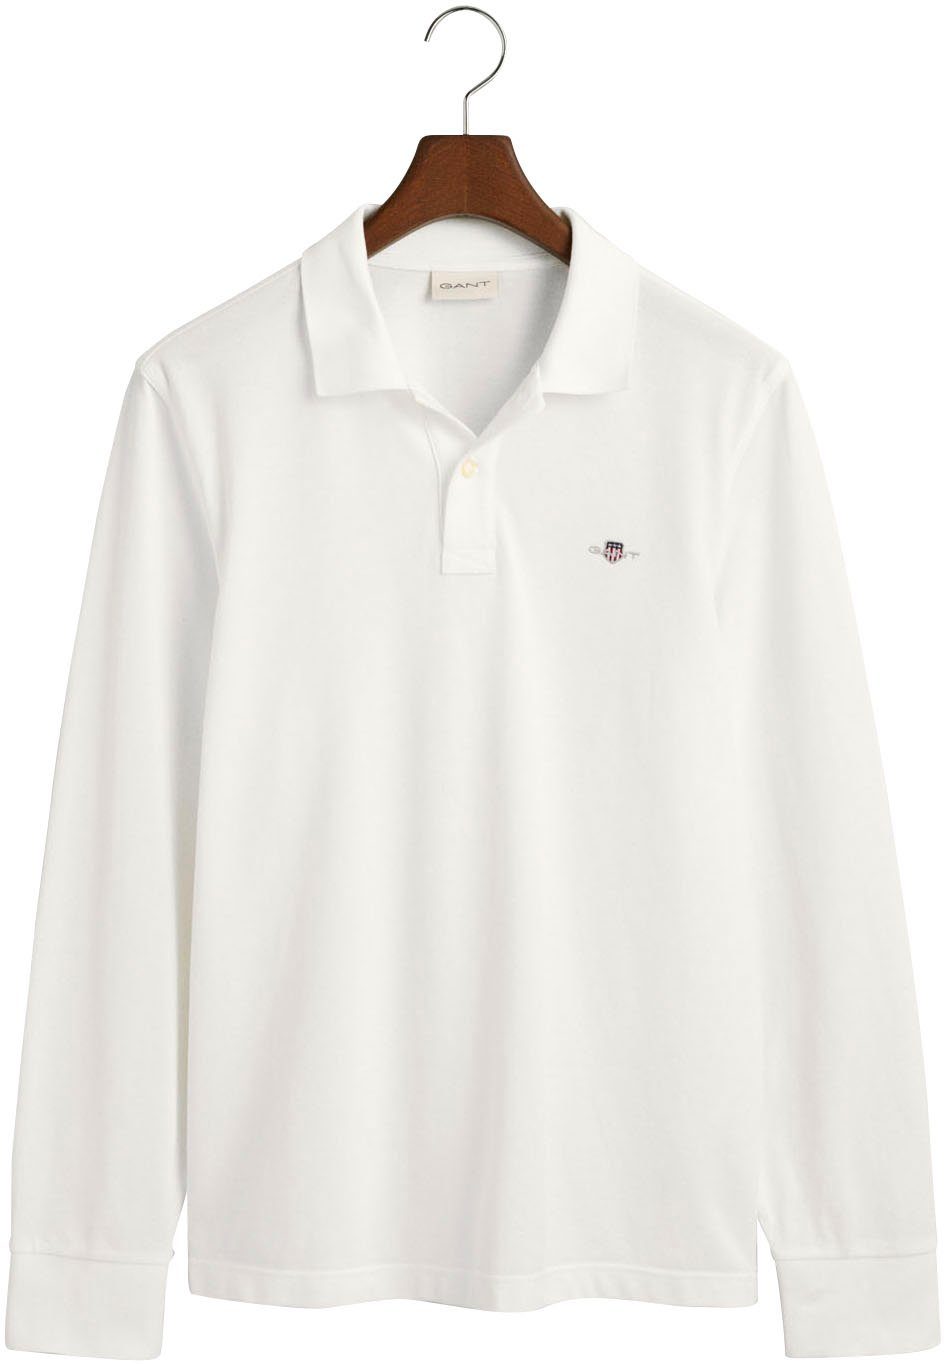 Gant Poloshirt mit PIQUE white Brust Logotickerei REG auf SHIELD LS RUGGER der